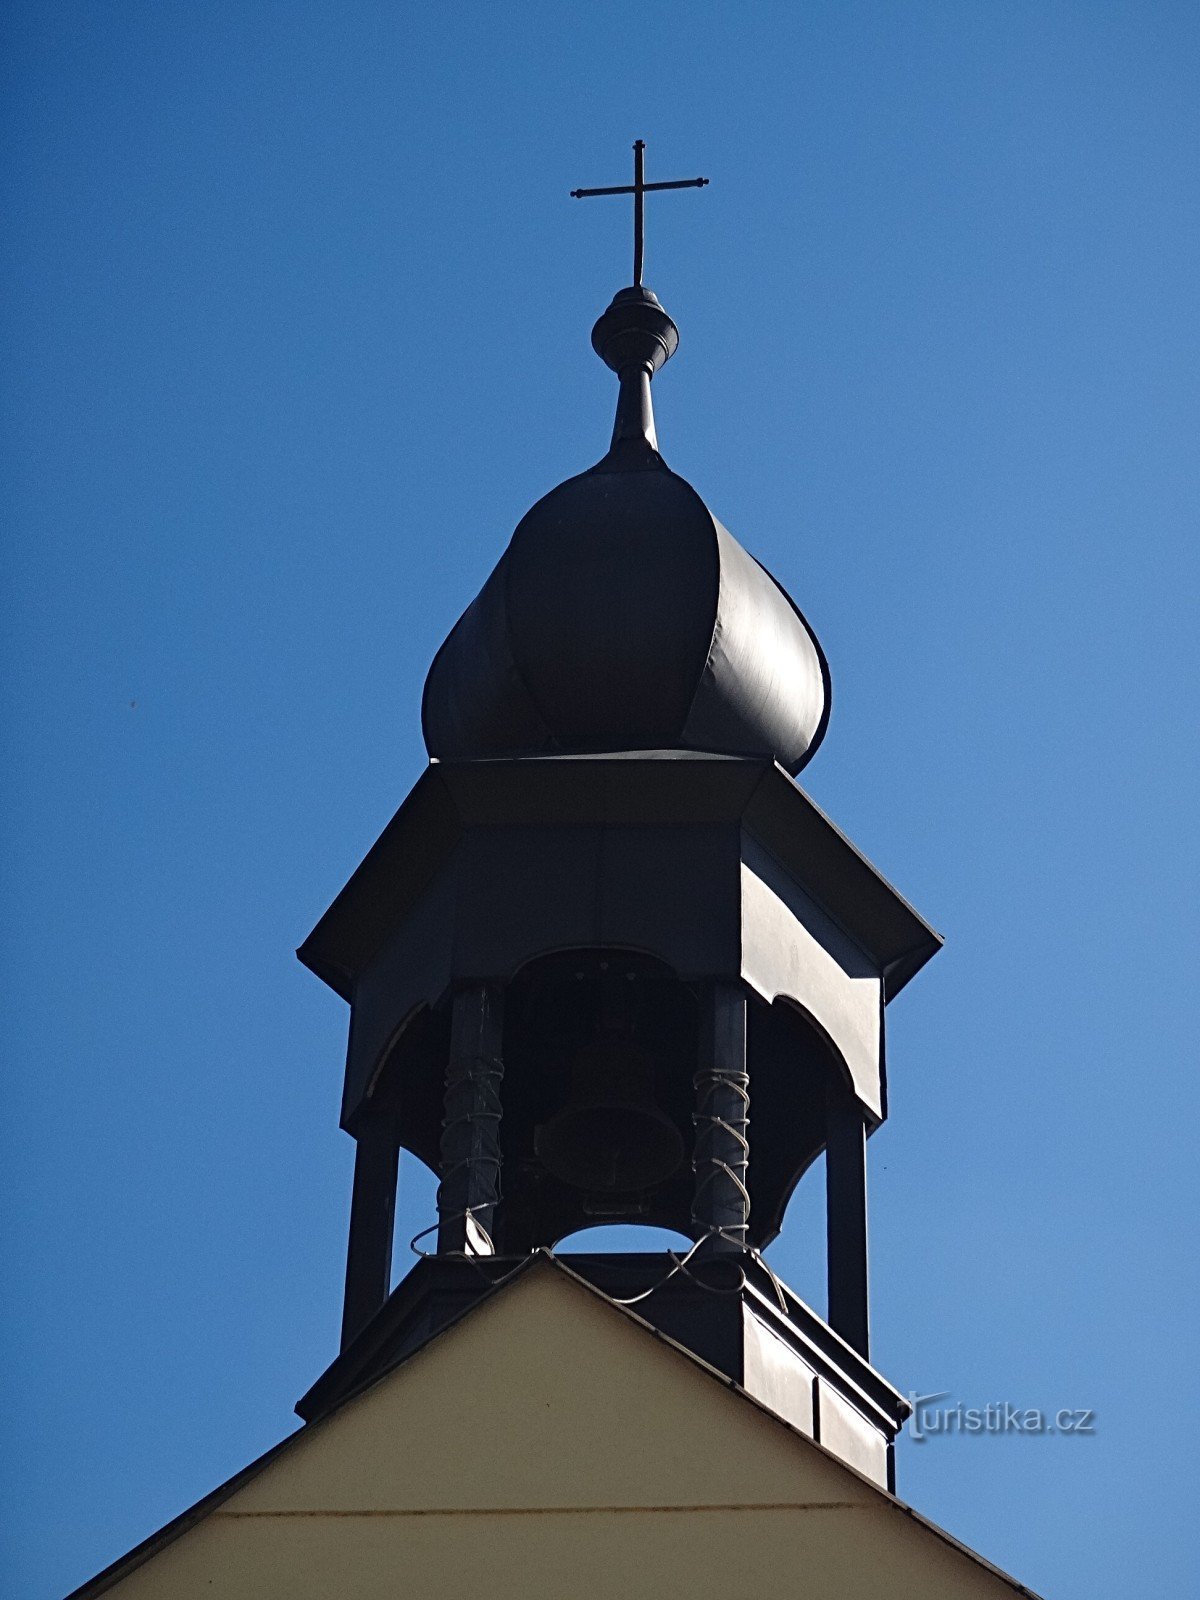 礼拝堂の塔にあるヴェルニョヴィツェの鐘楼